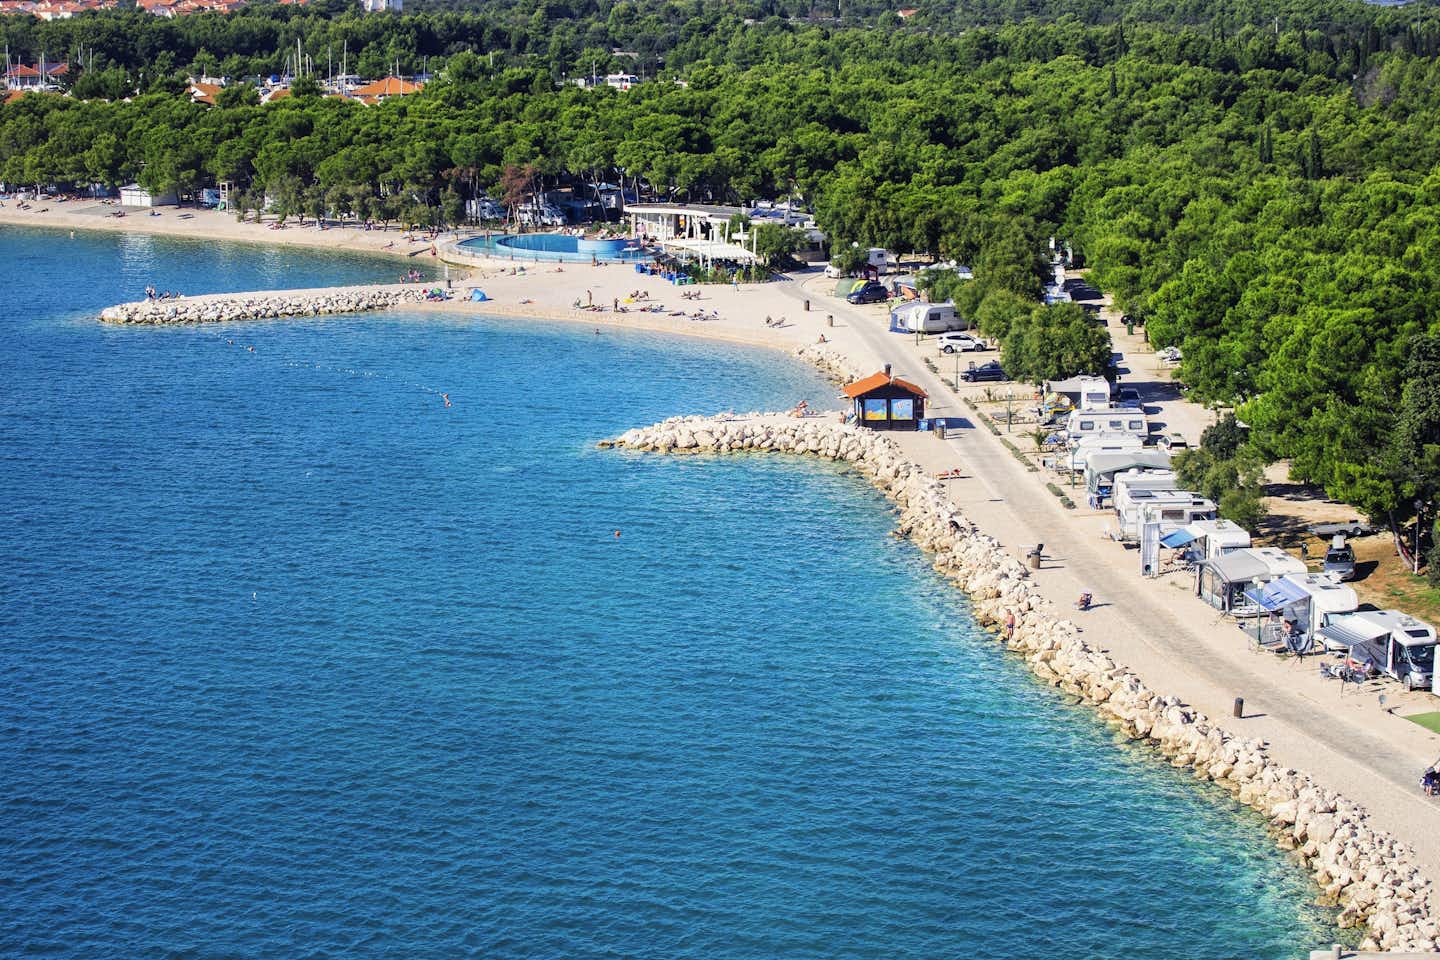 Camping Beach Resort Solaris - Campingplatz am Waldrand direkt am Strand mit Blick auf das adriatische Meer